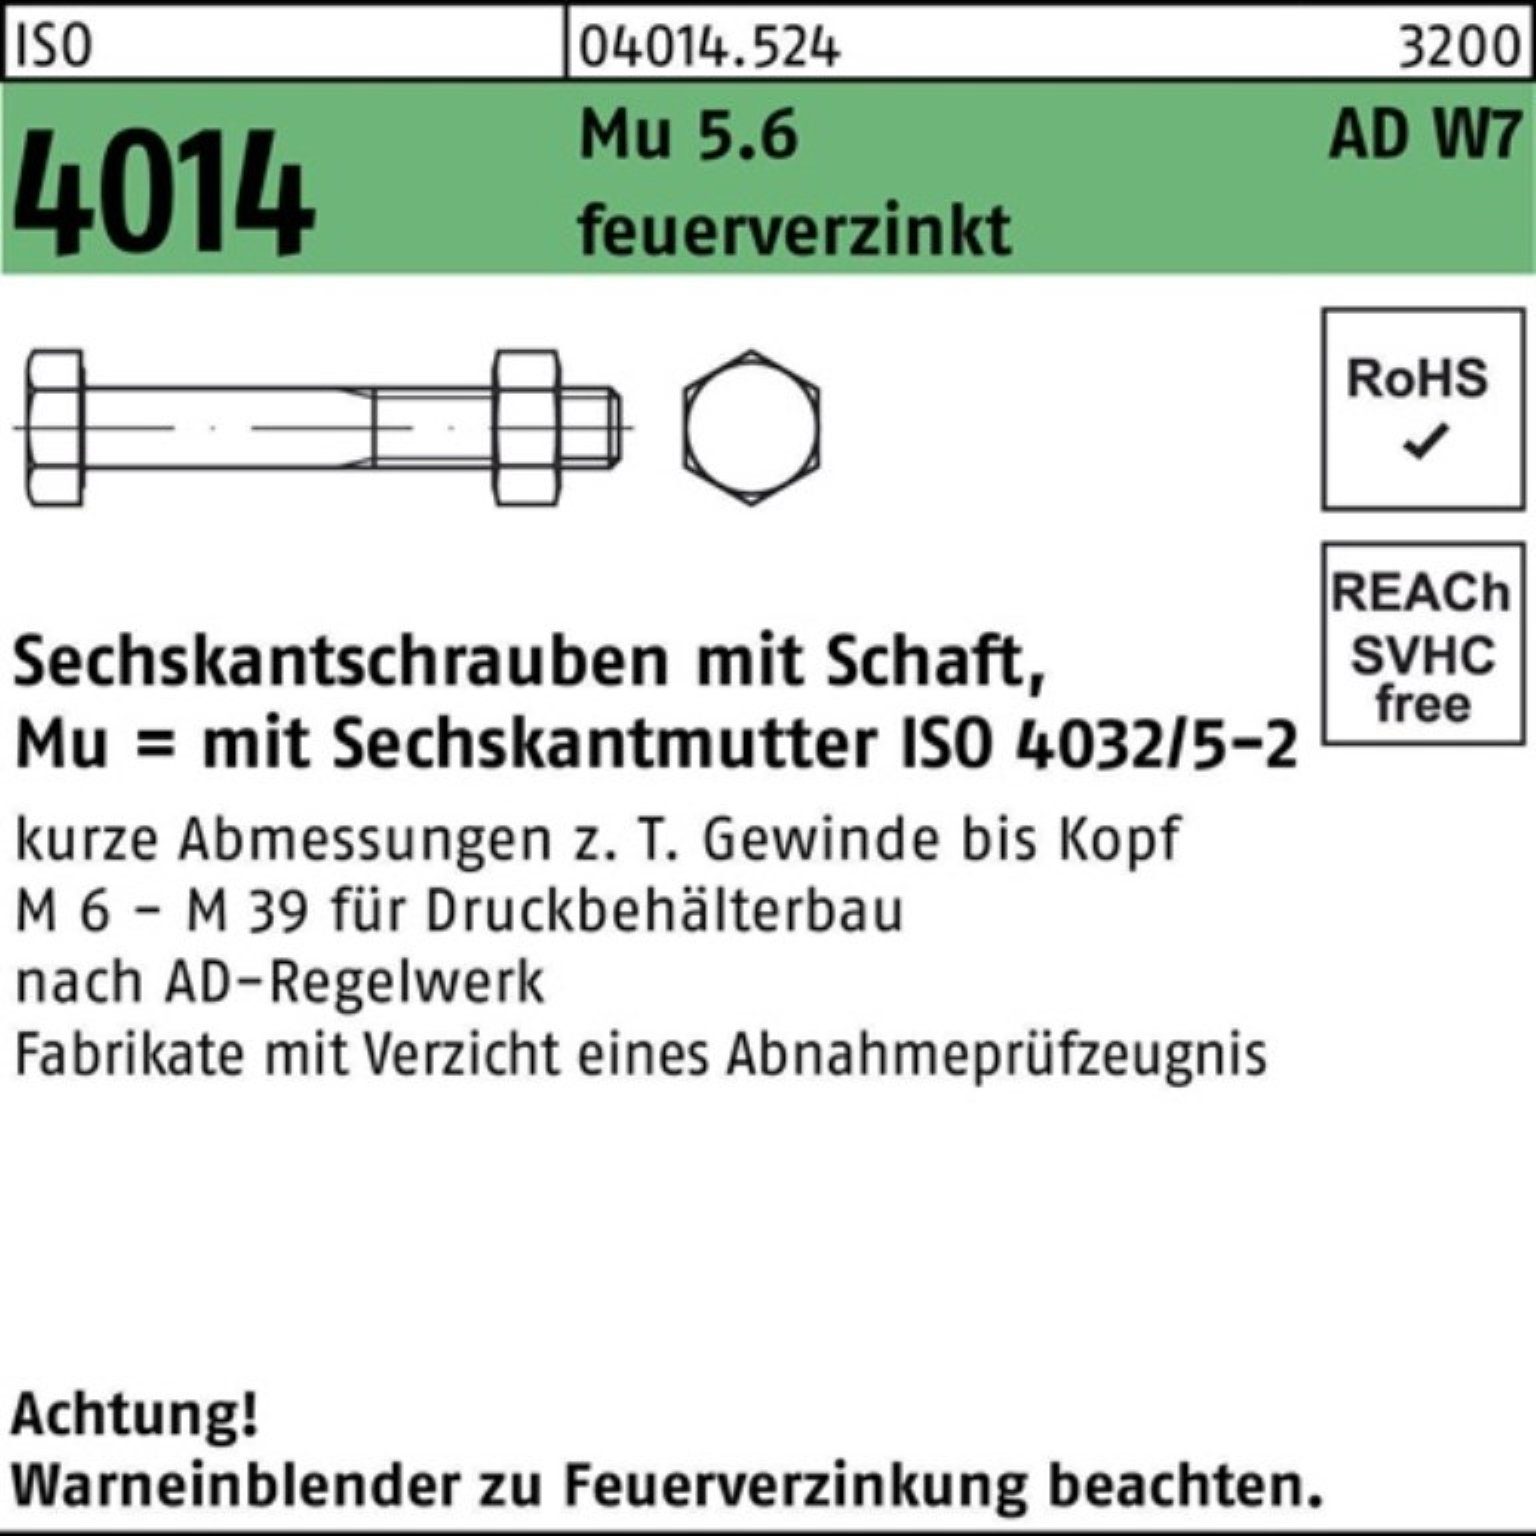 Pack Sechskantschraube M12x feuerve 5.6 Bufab Mu ISO 100er W7 Schaft Sechskantschraube 55 4014